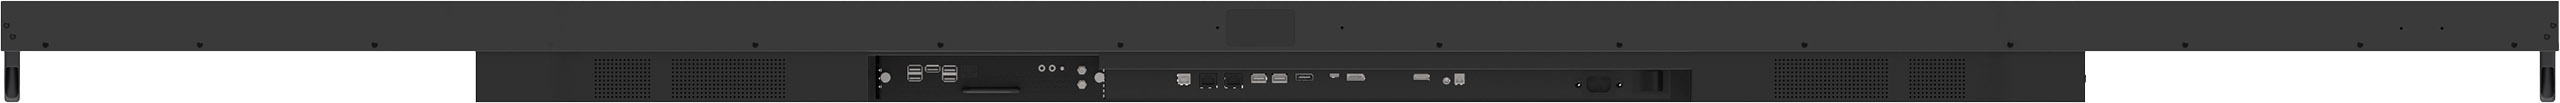 iiyama ProLite LH10551UWS-B1AG - 105 inch - 500 cd/m² - 21:9 Ultrawide - 5120x2160 - 24/7 - Stretch Display